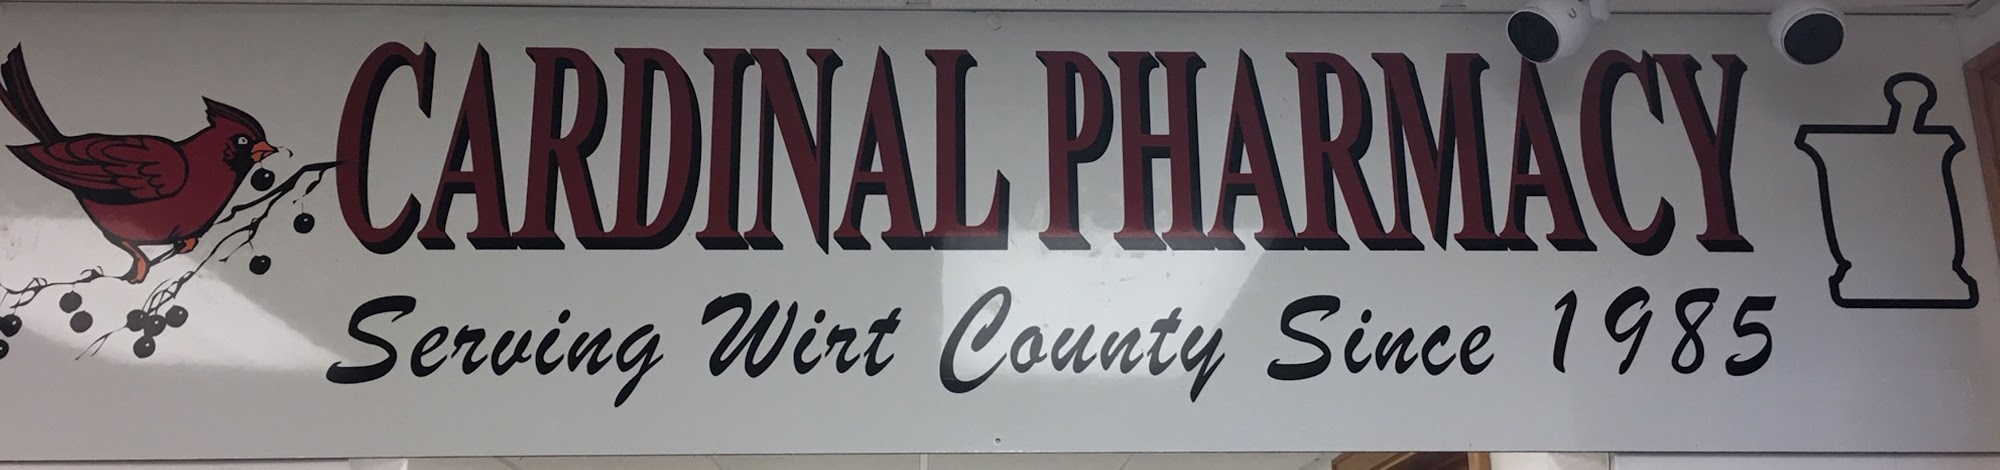 Cardinal Pharmacy